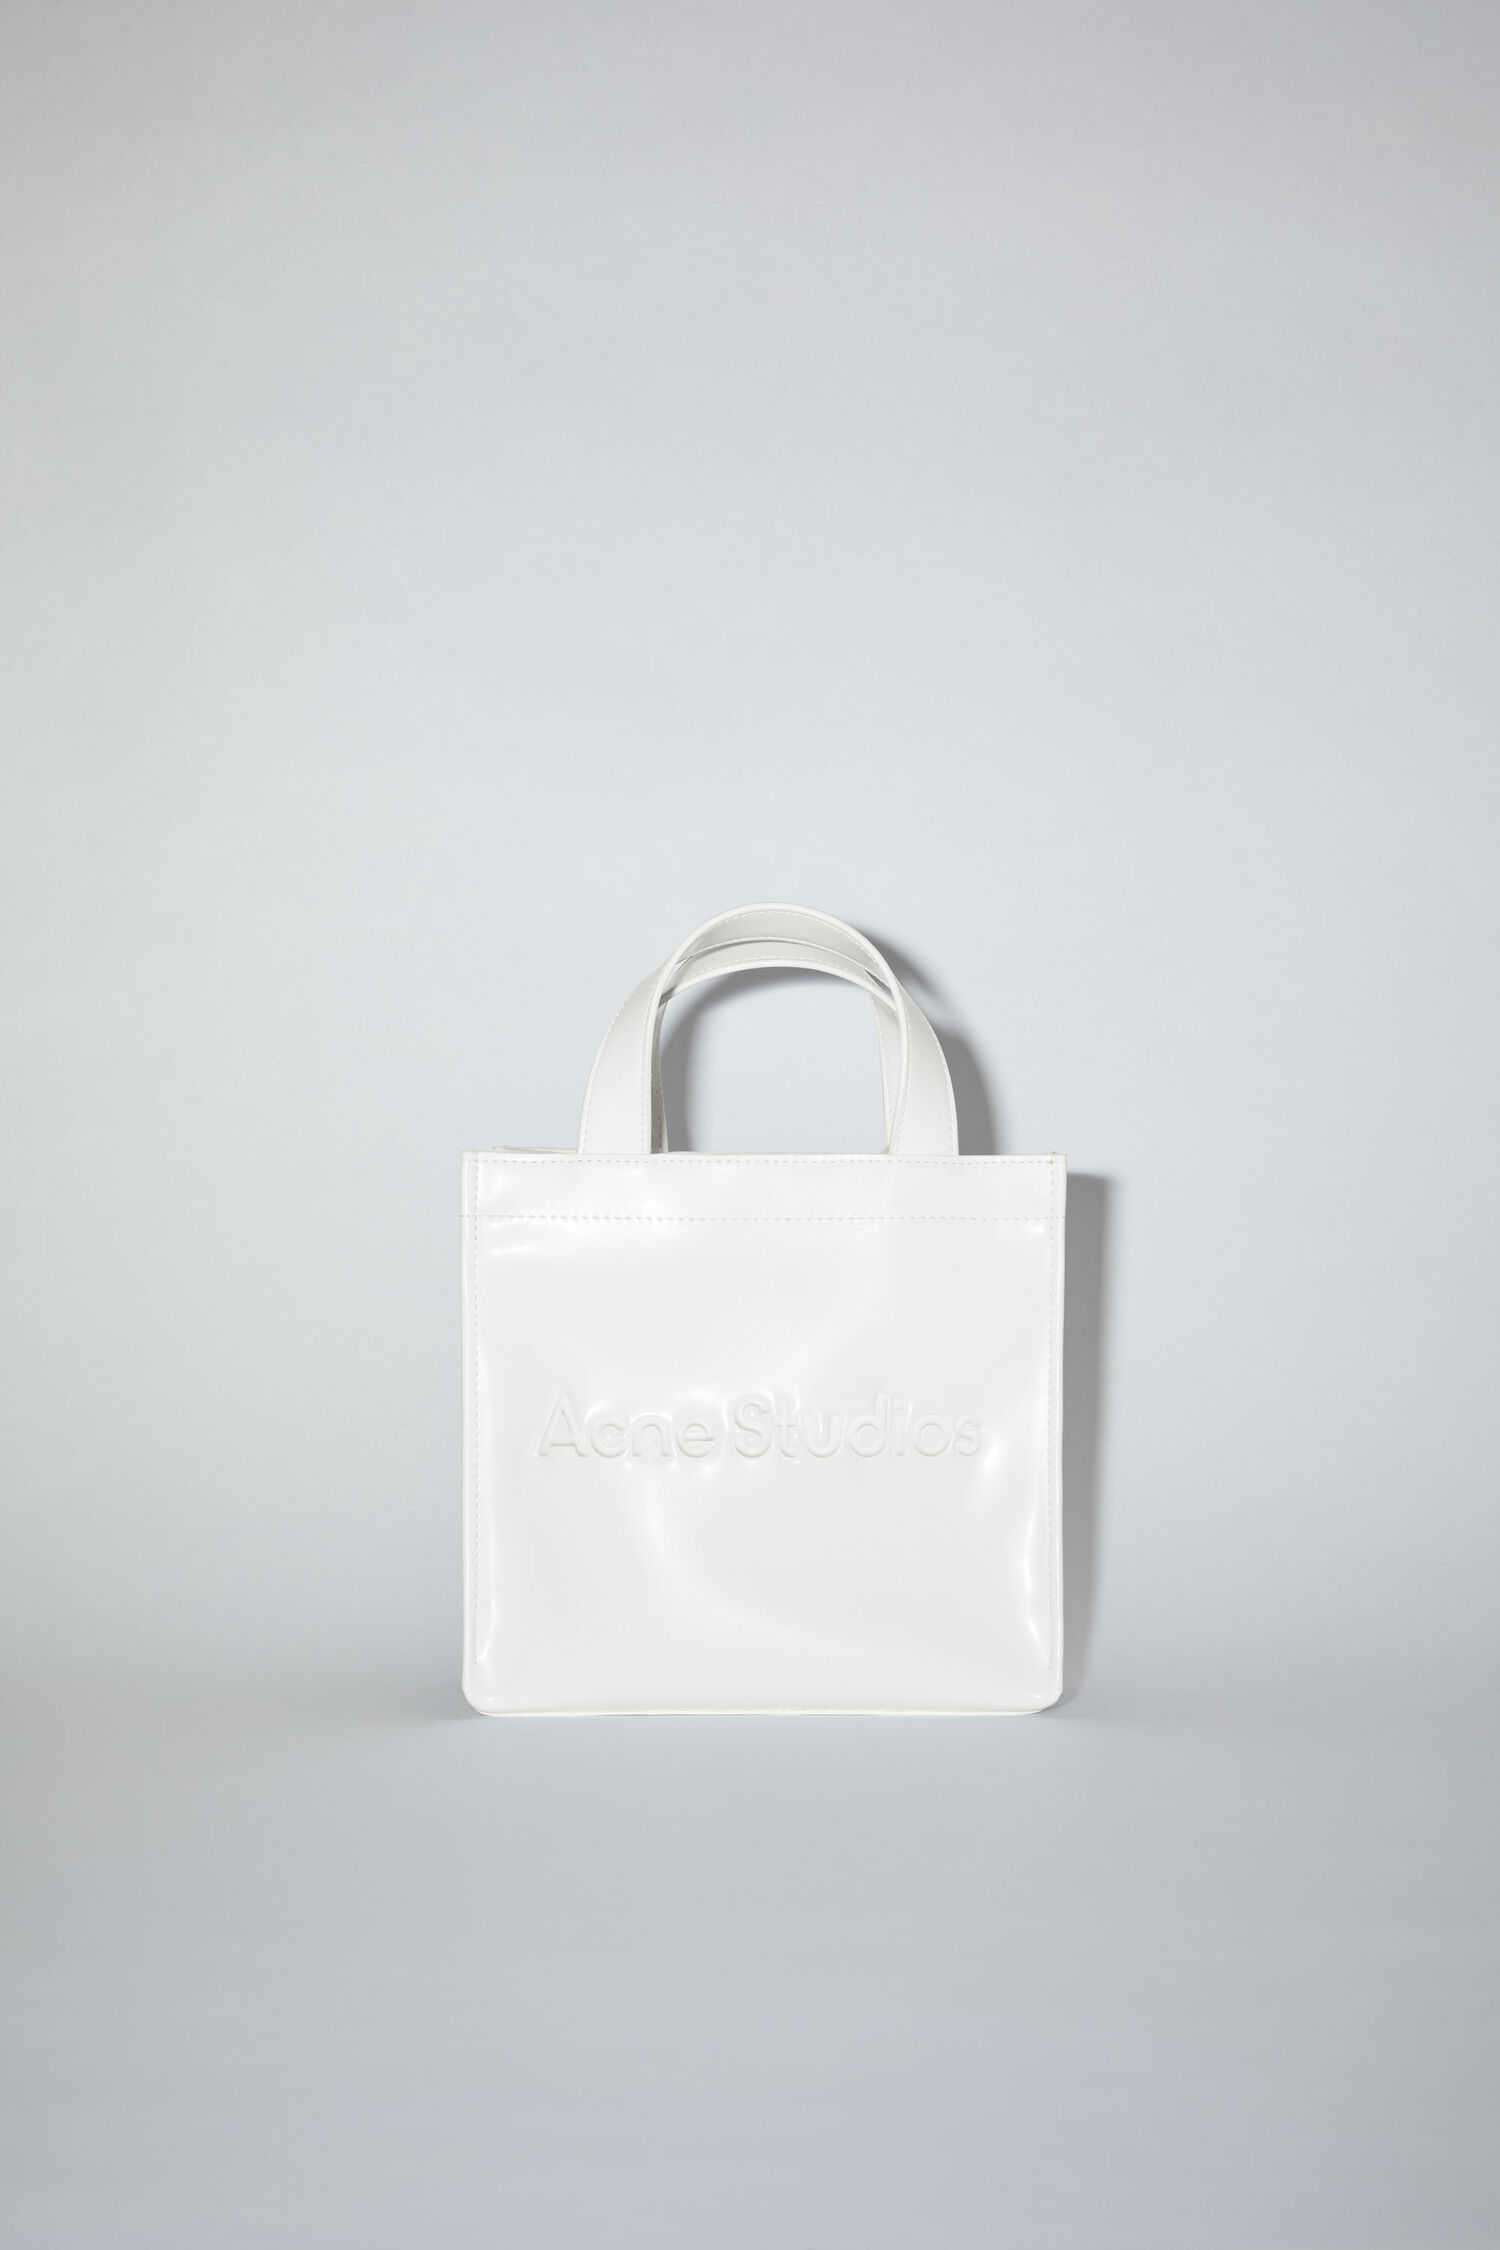 Acne Studios – Men’s Bags